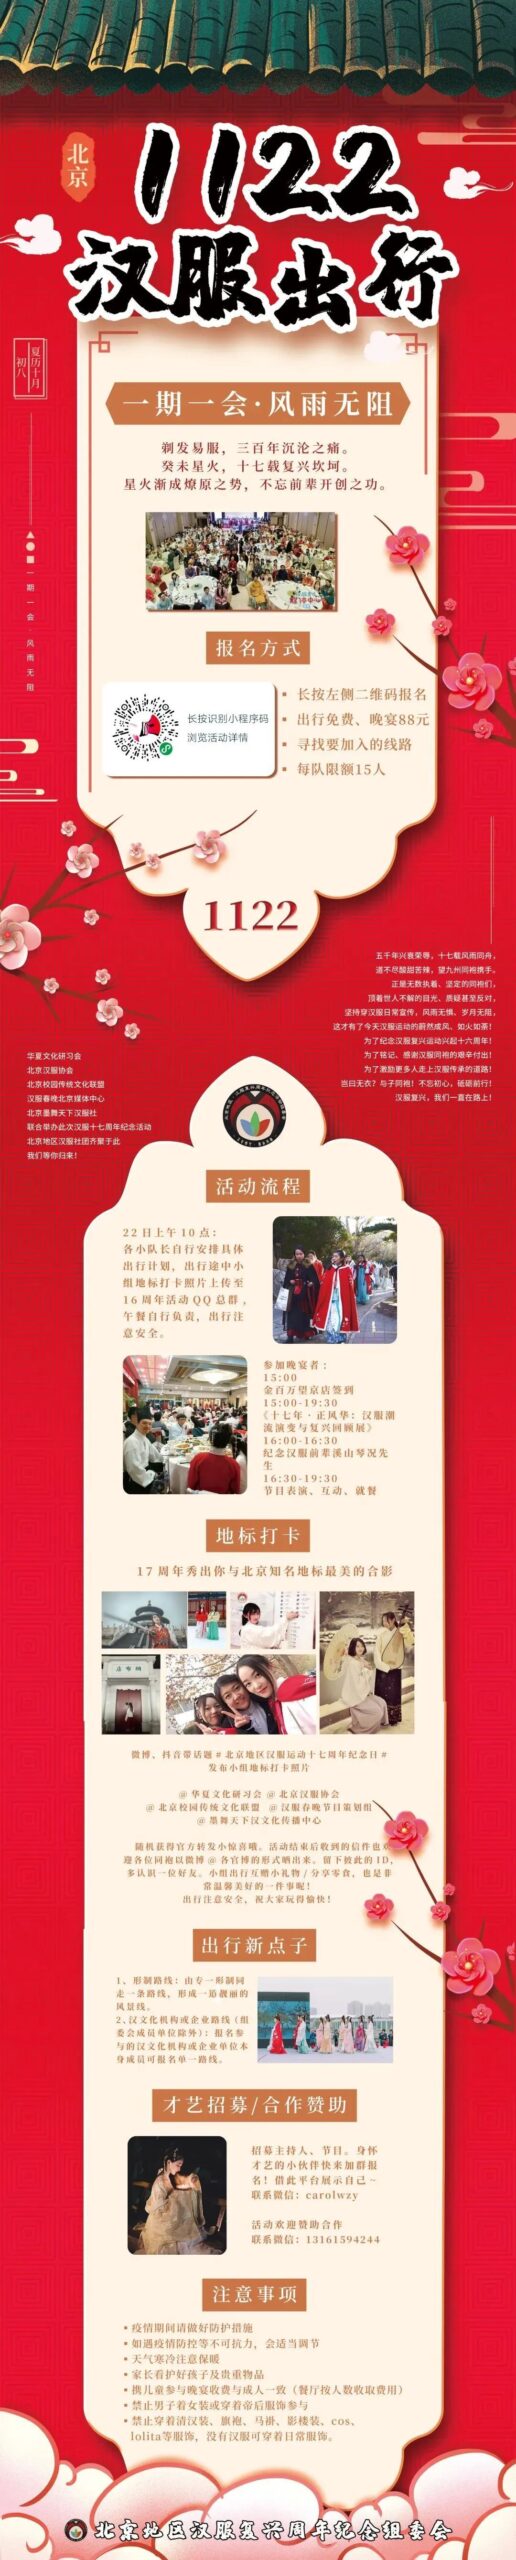 汉服活动 | 一期一会·风雨无阻||汉服运动十七周年纪念日·北京地区召集